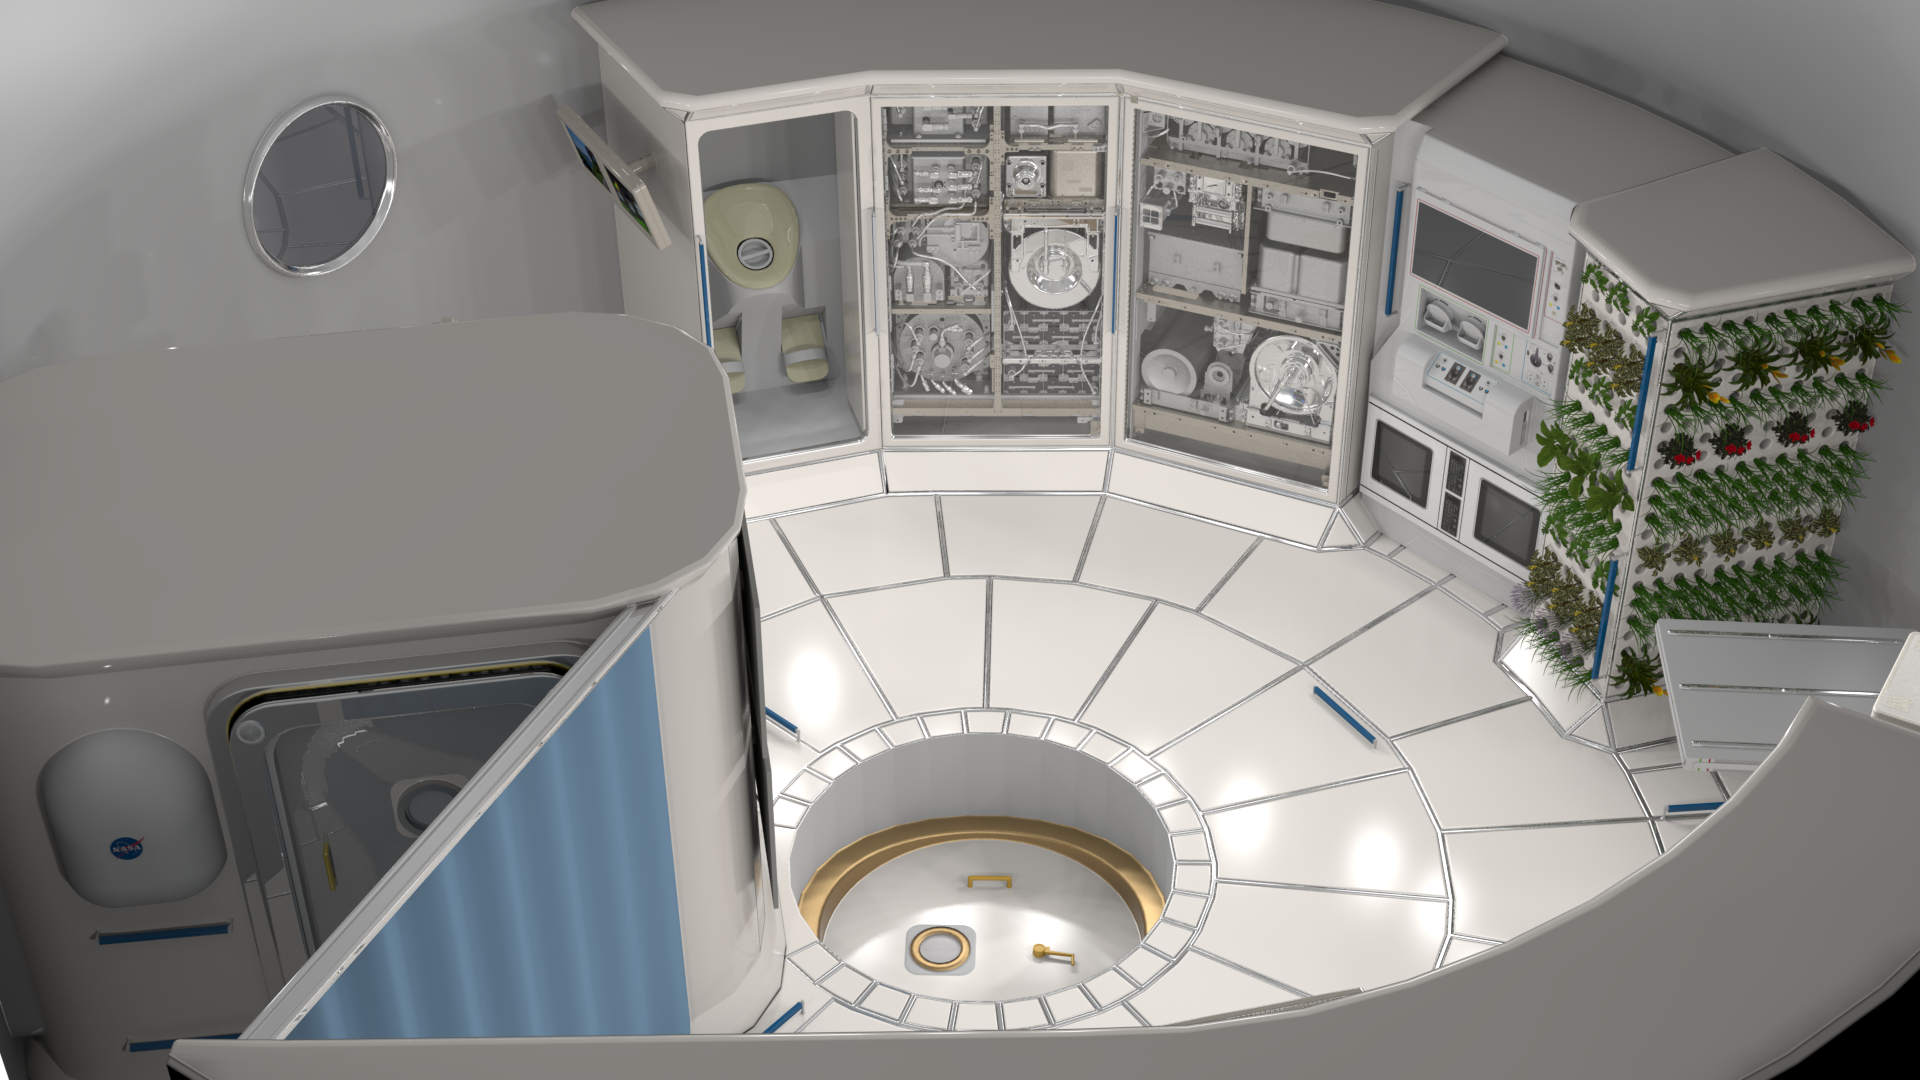 Concept image of space habitat interior